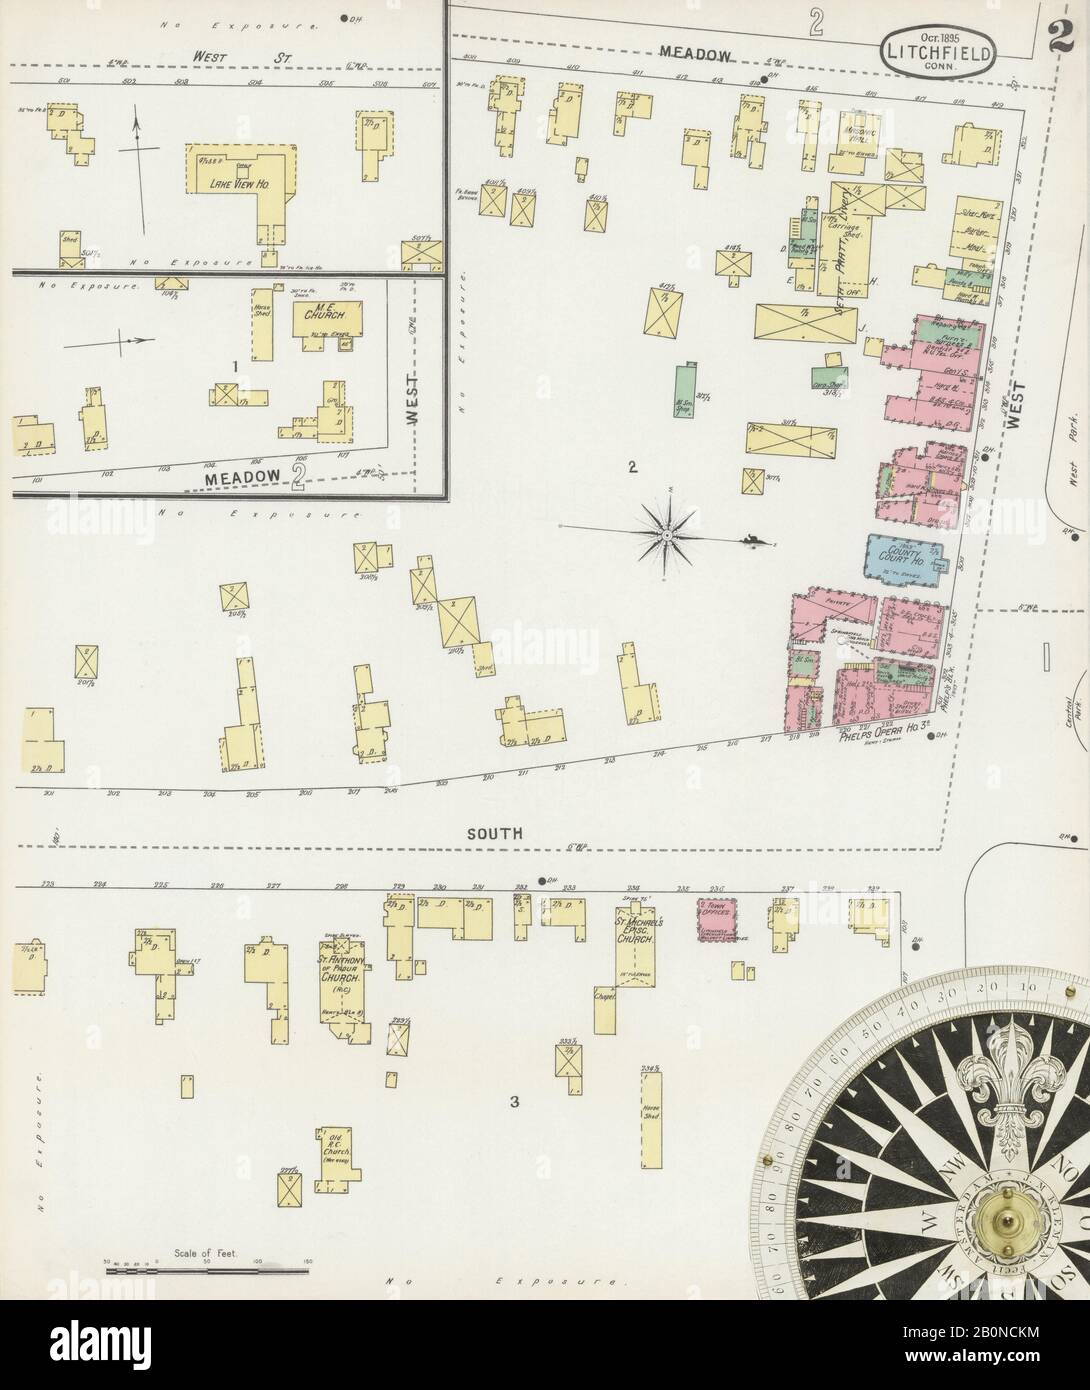 Bild 2 von Sanborn Fire Insurance Map aus Litchfield, Litchfield County, Connecticut. Okt. 2 Blatt(e), Amerika, Straßenkarte mit einem Kompass Aus Dem 19. Jahrhundert Stockfoto